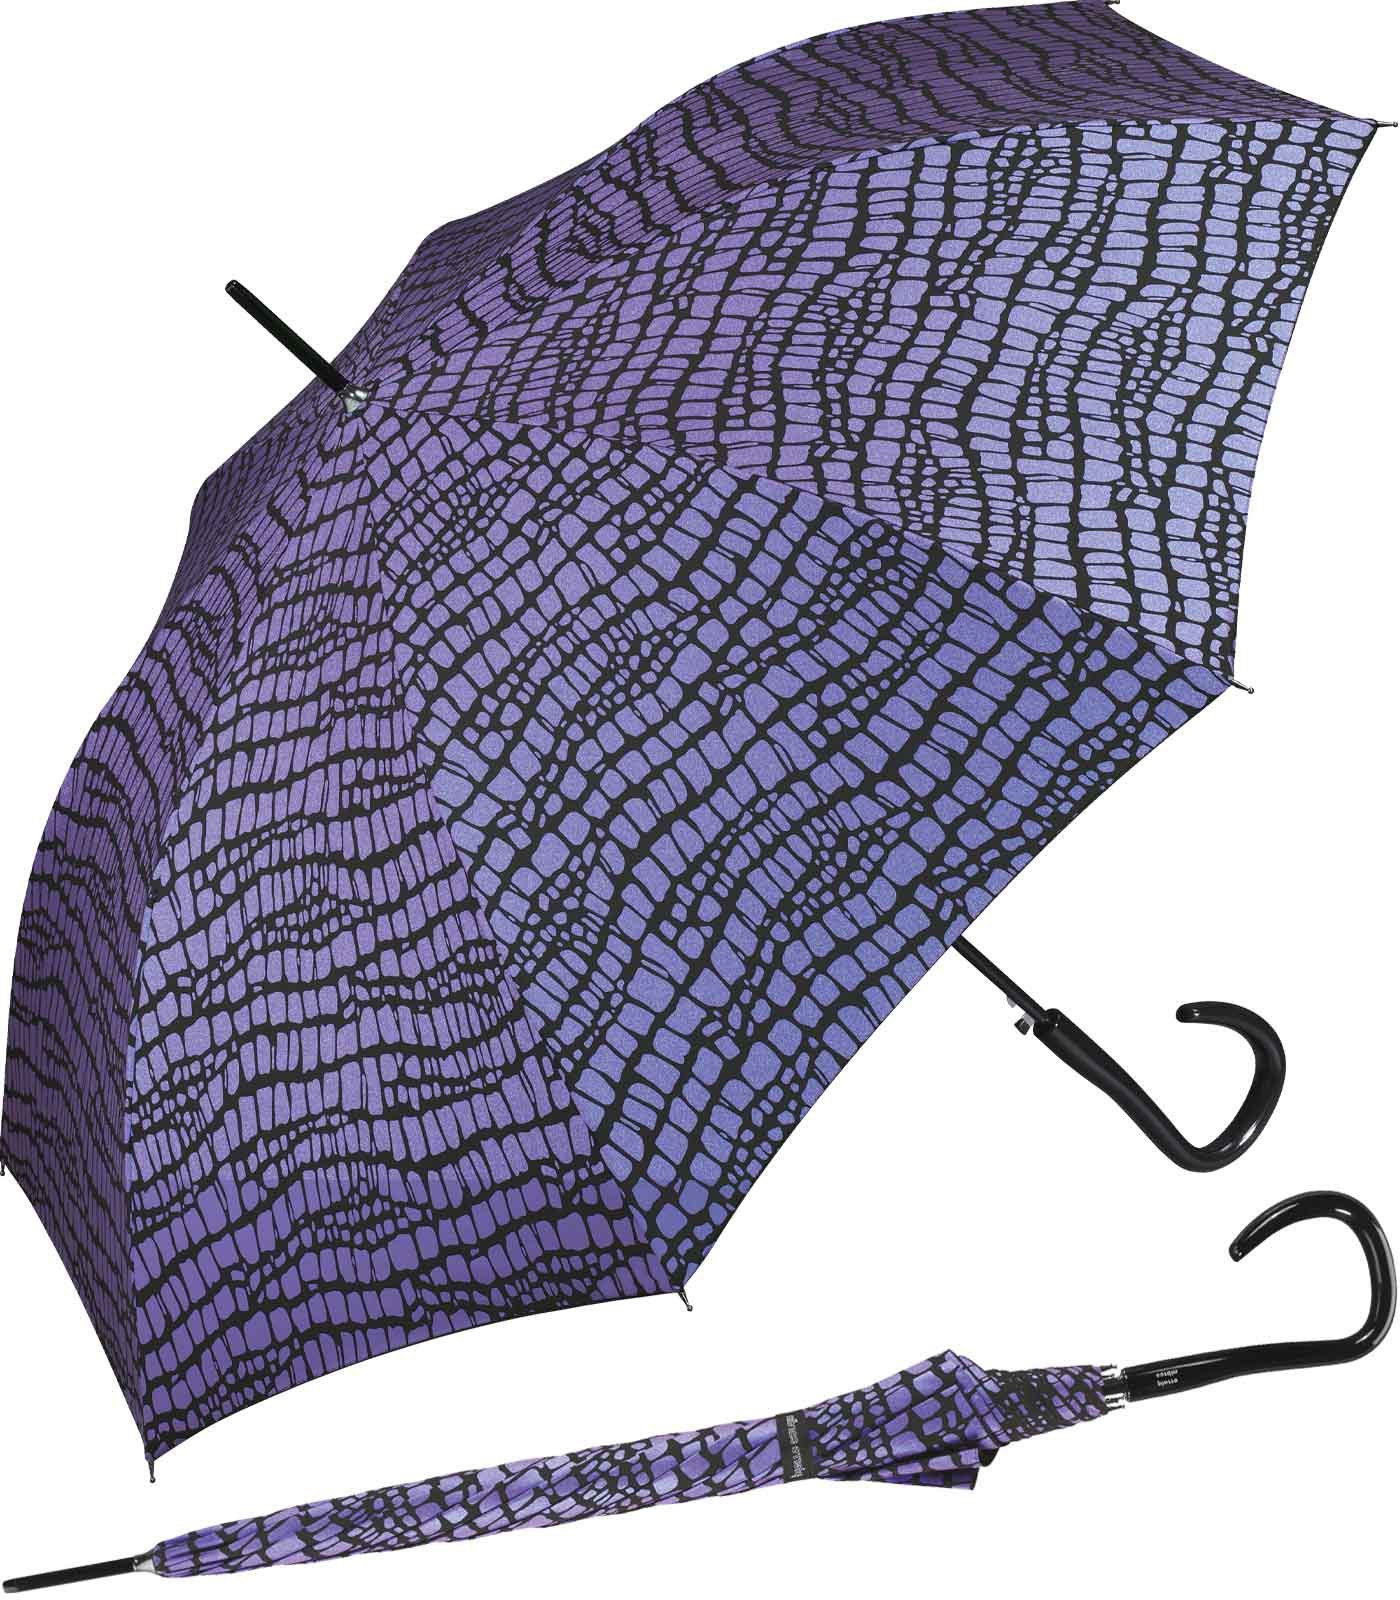 Pierre Cardin Langregenschirm großer Damen-Regenschirm den Krokodil-Optik Regenschirm für mit Auf-Automatik, lila-schwarz